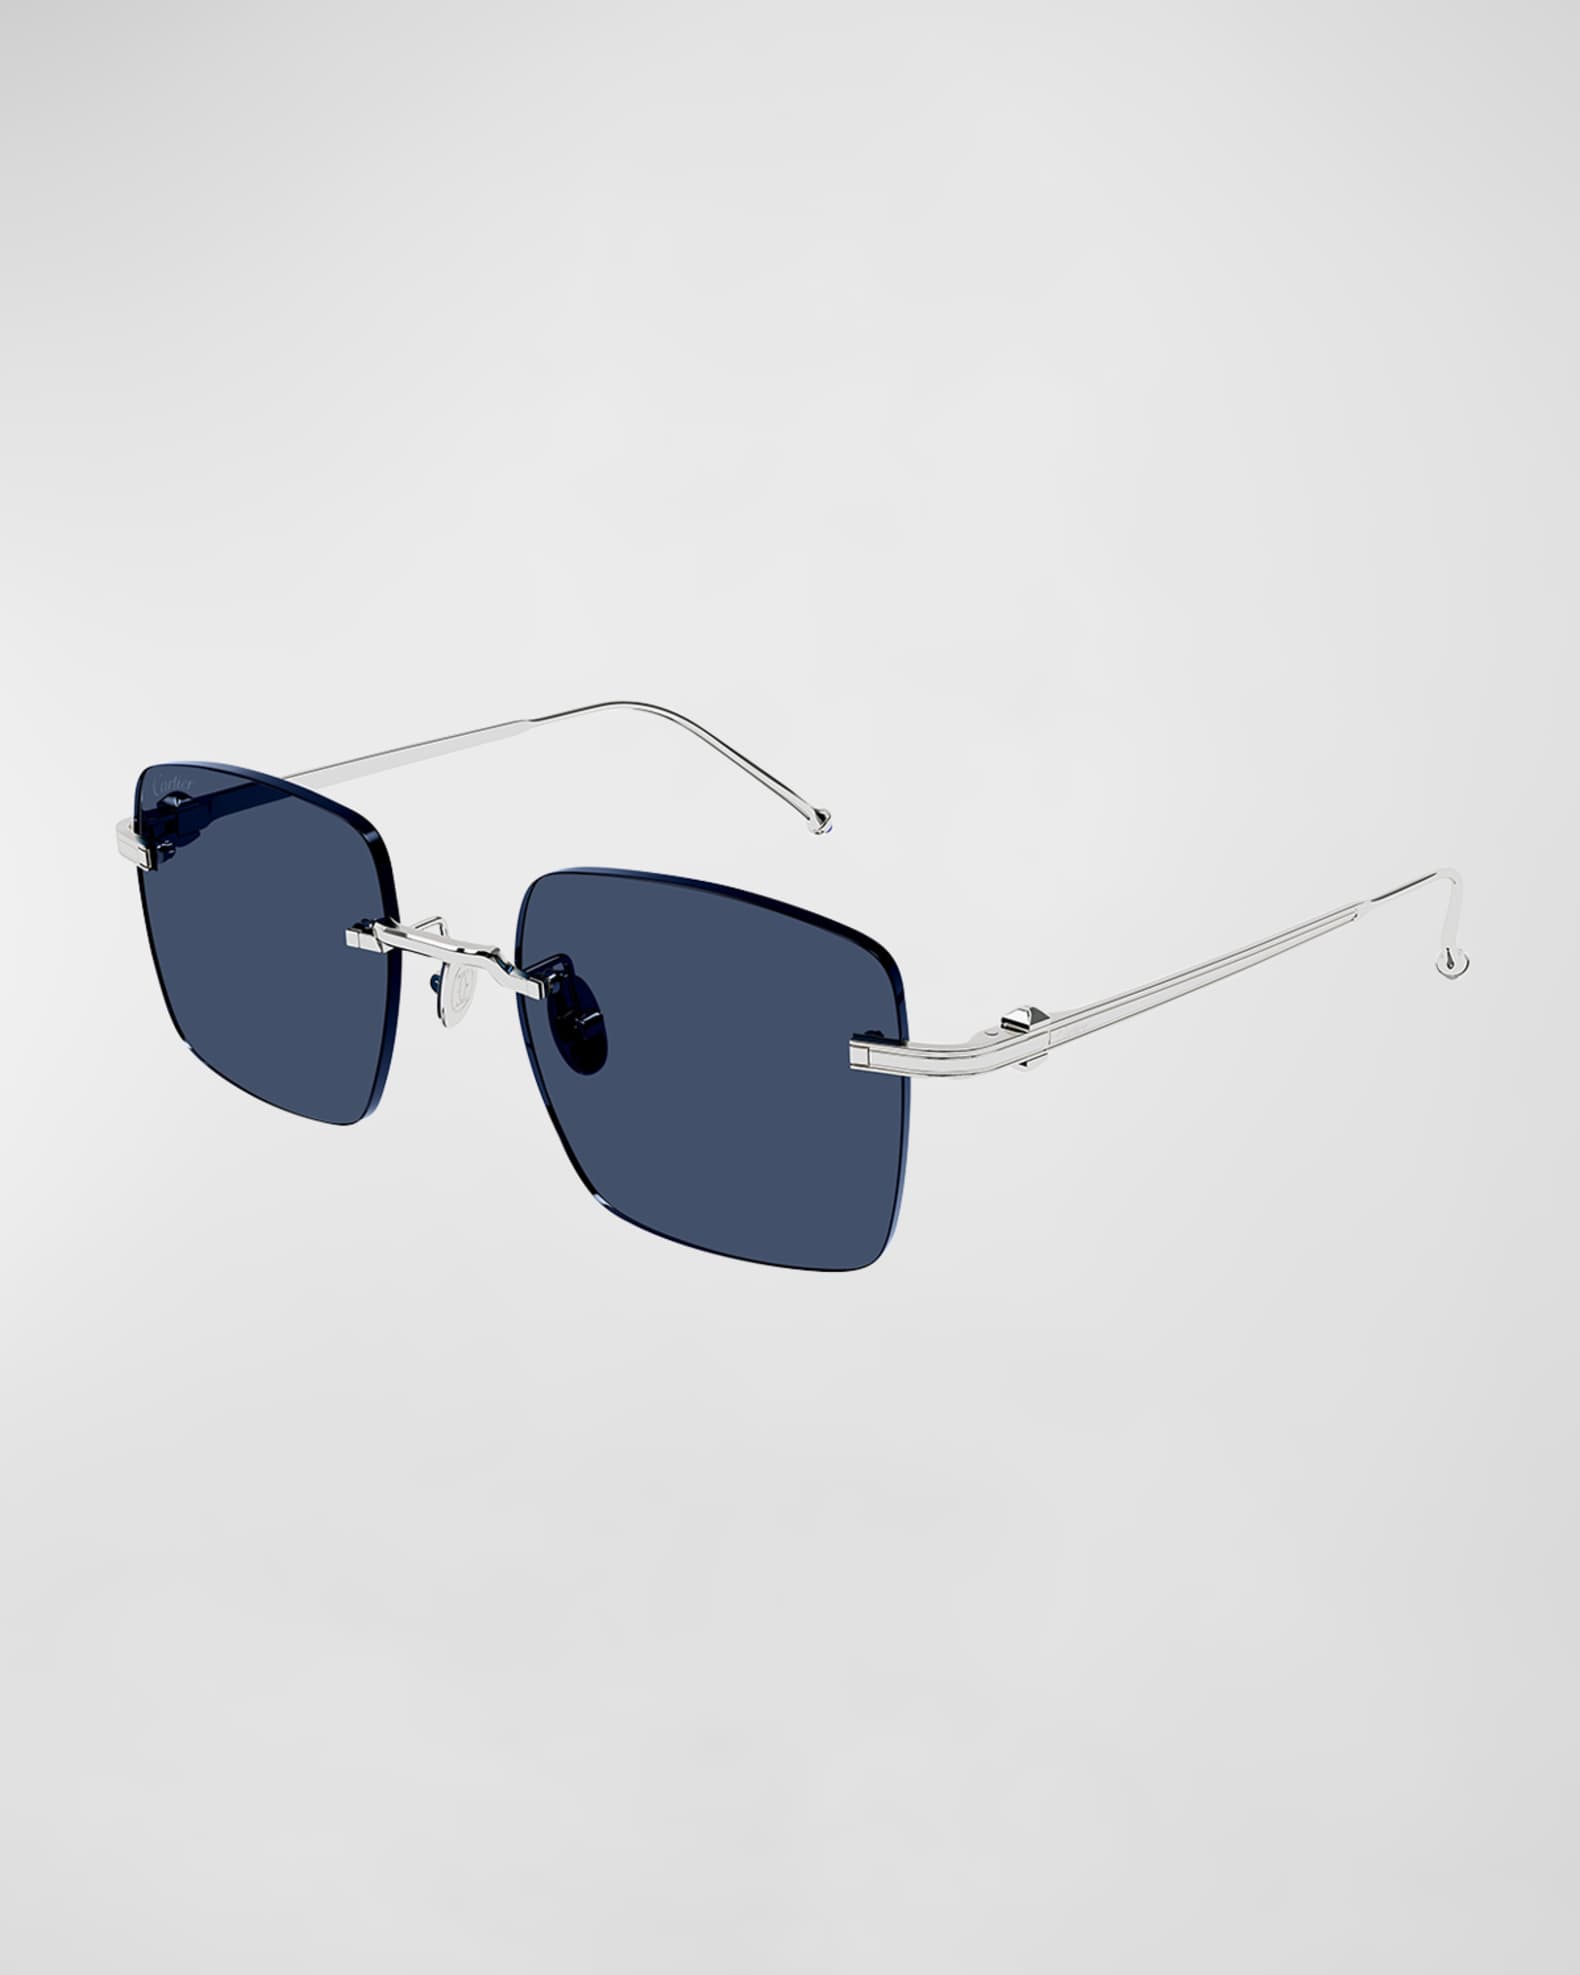 Cartier Men's Rimless Rectangle Metal Sunglasses 001 Smooth Platin